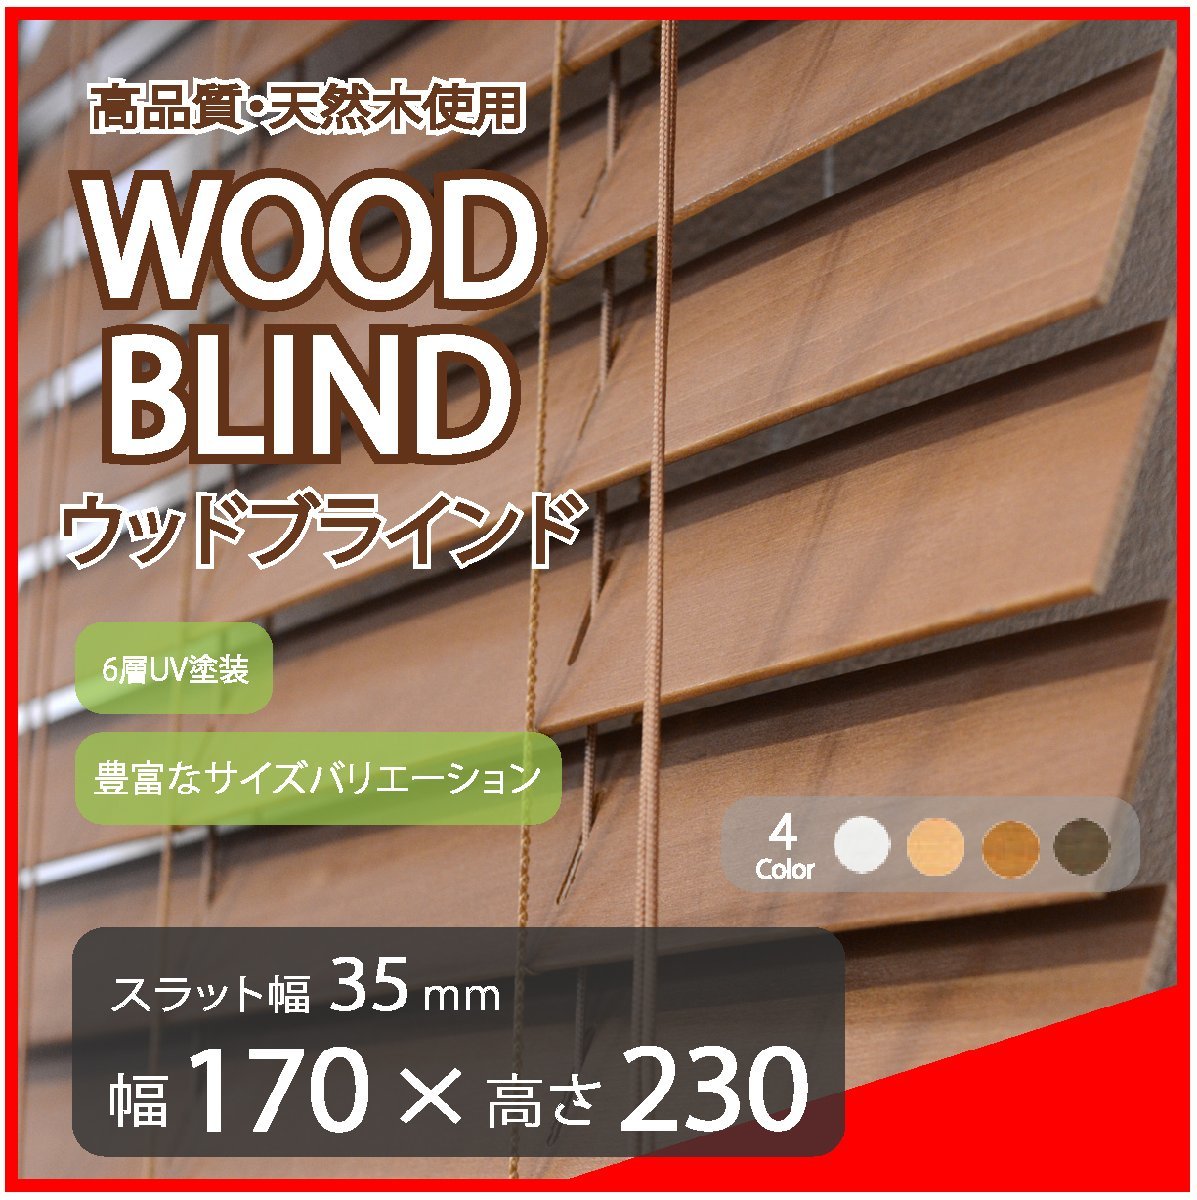 高品質 ウッドブラインド 木製 ブラインド 既成サイズ スラット(羽根)幅35mm 幅170cm×高さ230cm ブラウン